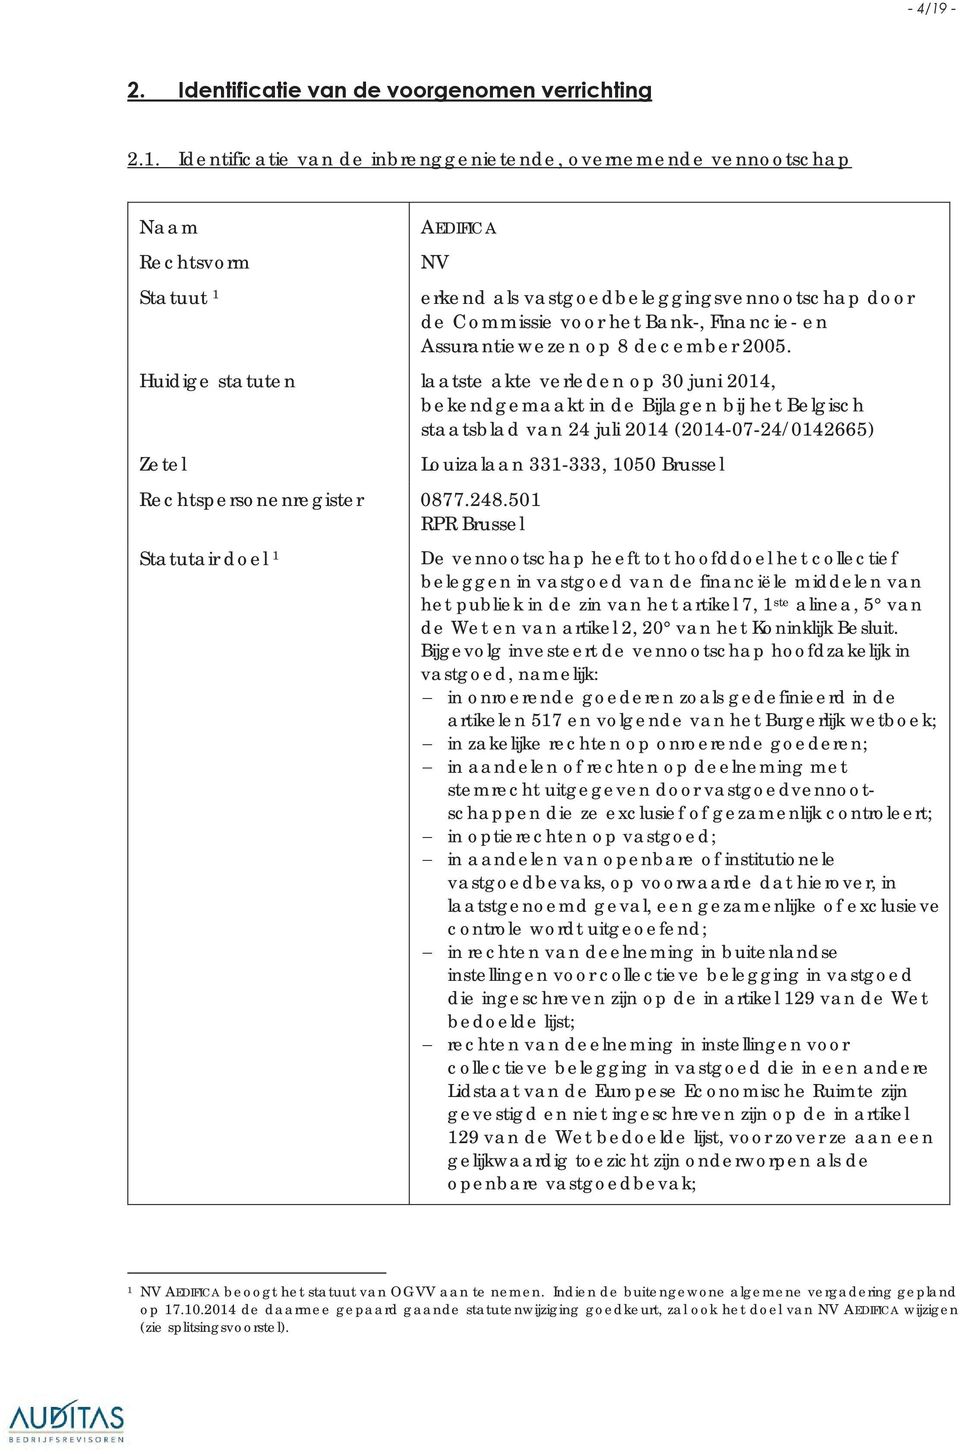 Huidige statuten laatste akte verleden op 30 juni 2014, bekendgemaakt in de Bijlagen bij het Belgisch staatsblad van 24 juli 2014 (2014-07-24/0142665) Zetel Rechtspersonenregister 0877.248.